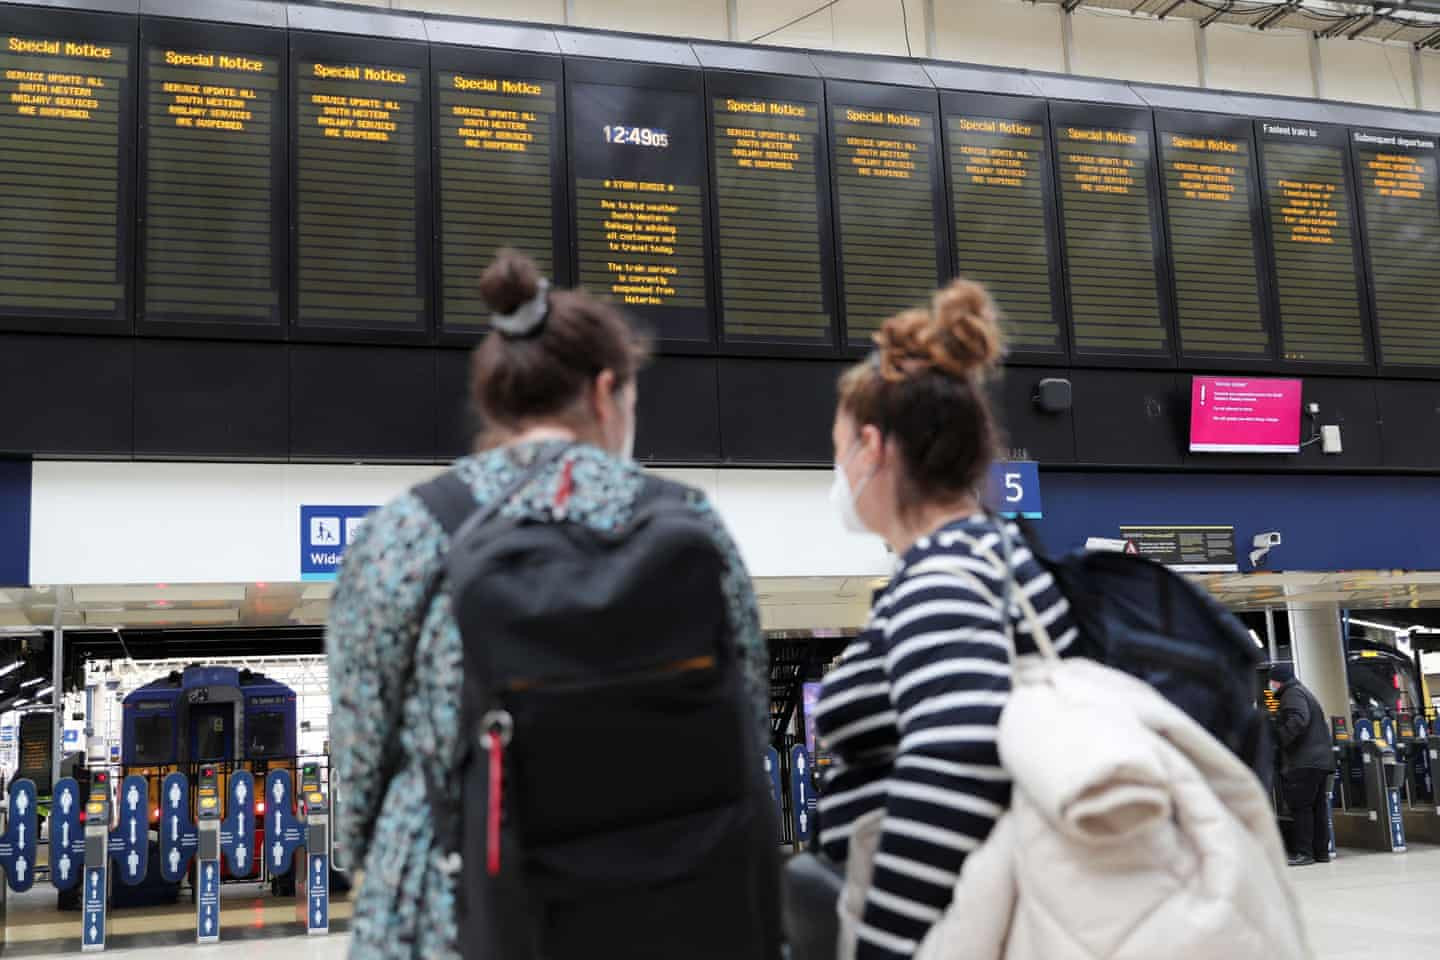 Nhiều chuyến tàu bị hoãn và hủy chuyến làm gián đoạn hành trình. Ảnh: May James / Reuters.